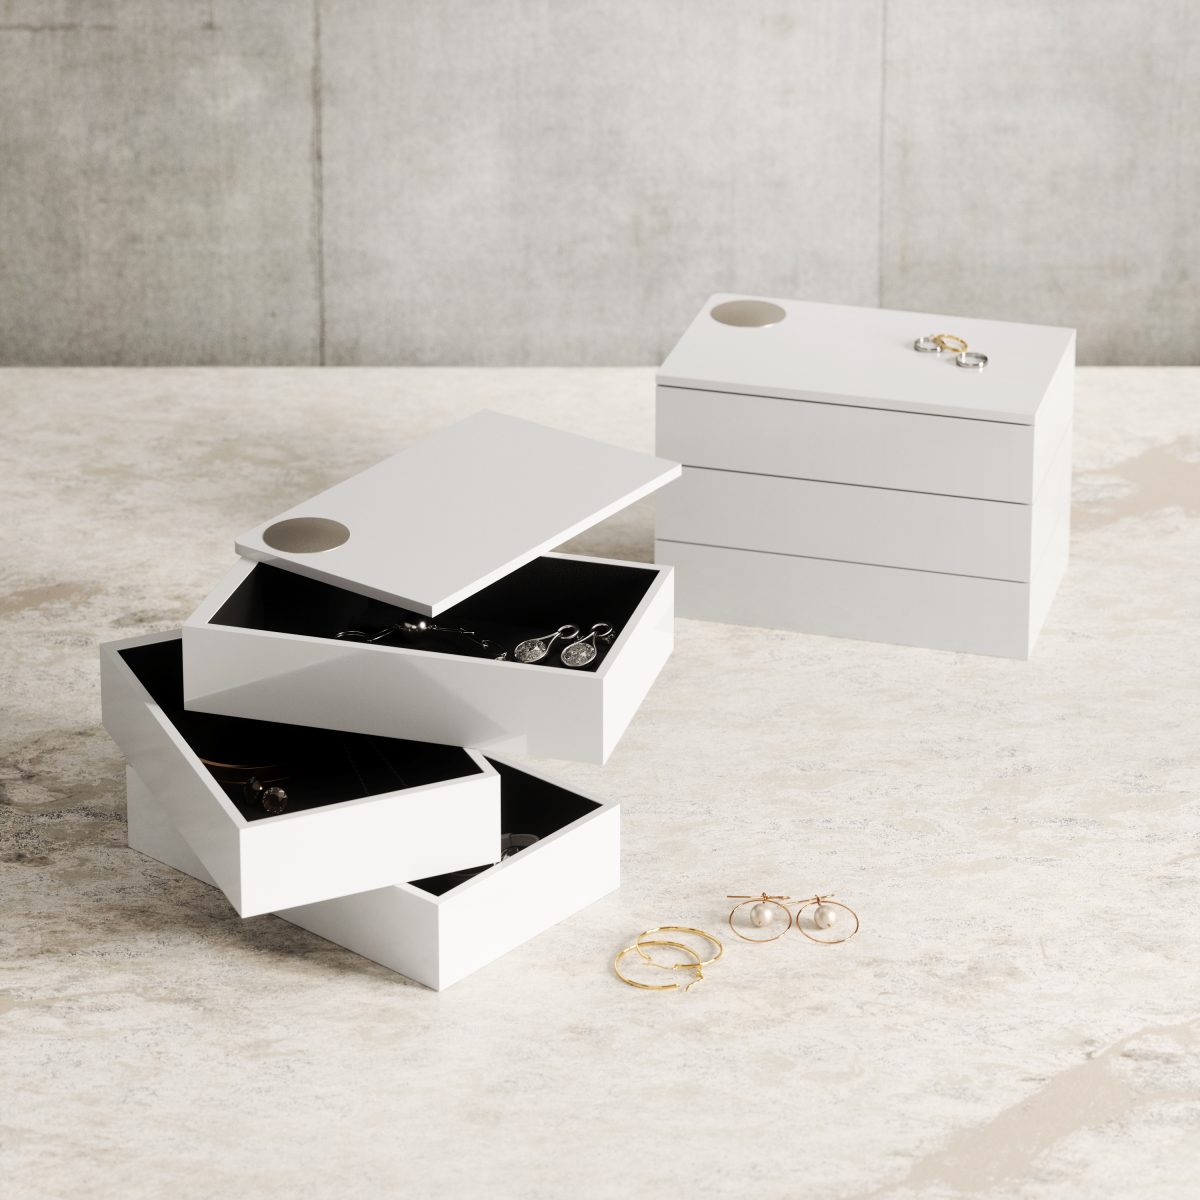 Кутия за бижута и аксесоари UMBRA SPINDLE - цвят бял